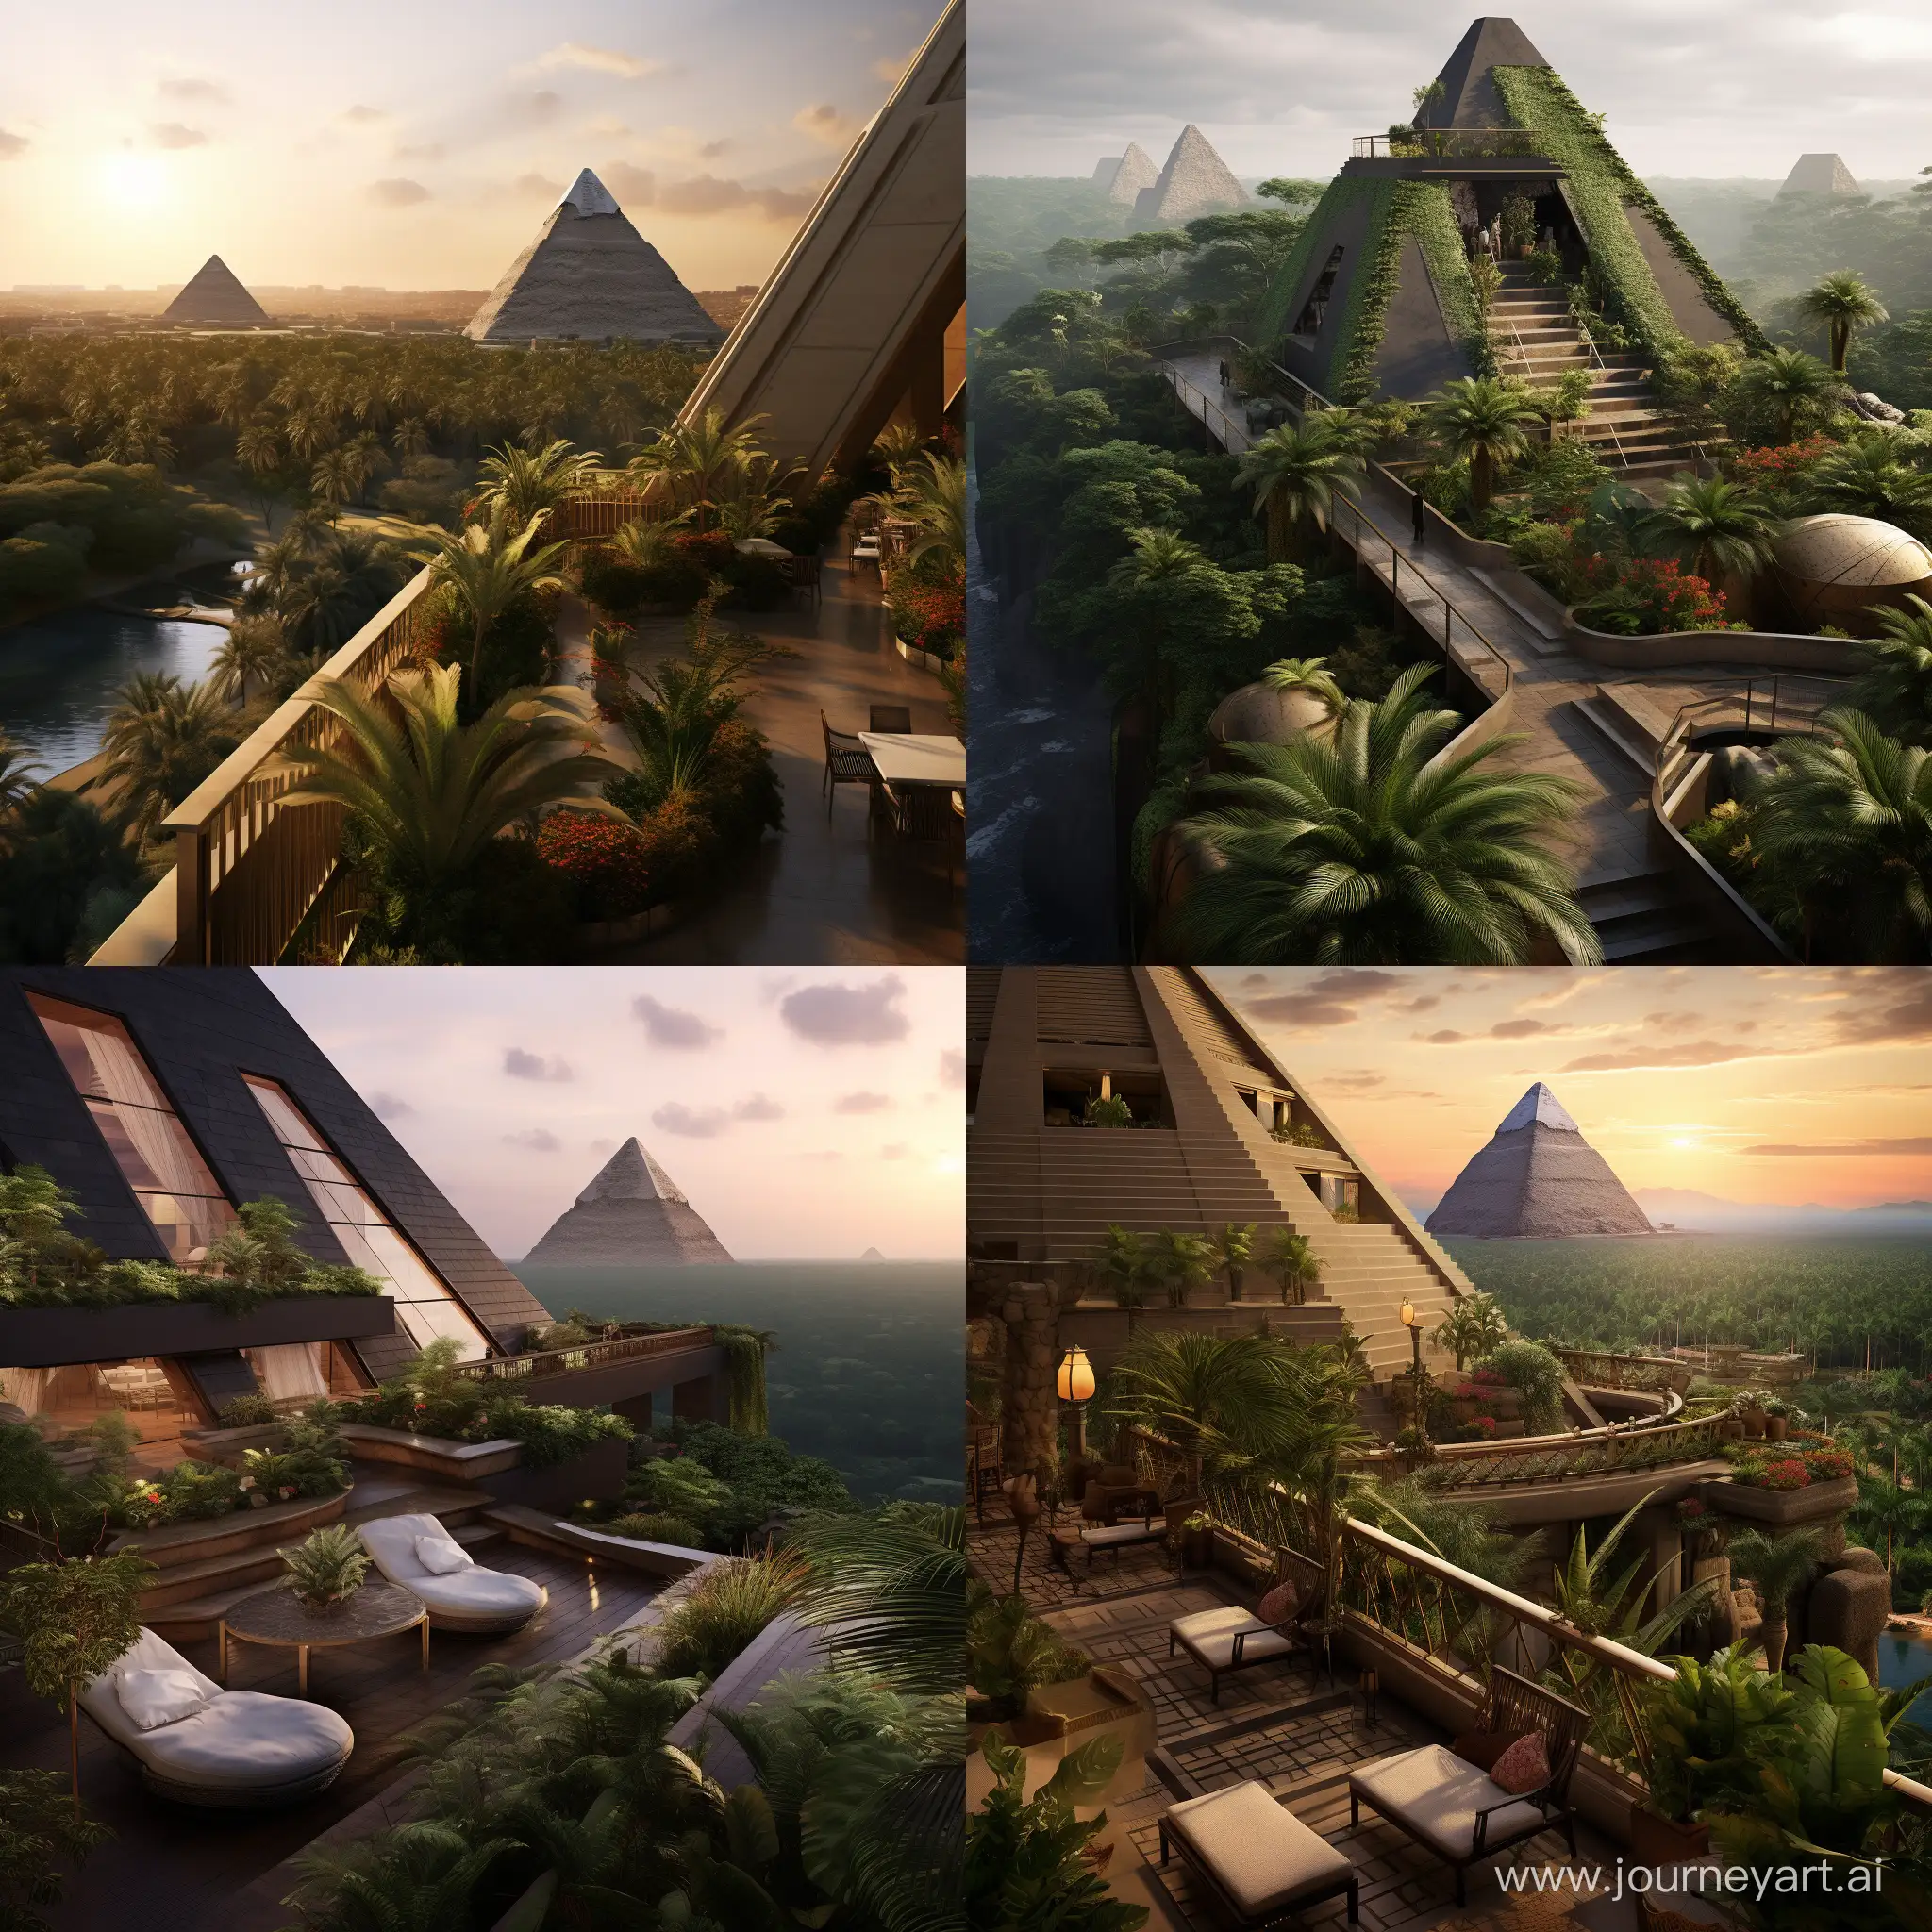 Mısır piramitleri üzerine balkon ekleyip peyzaj yapsak